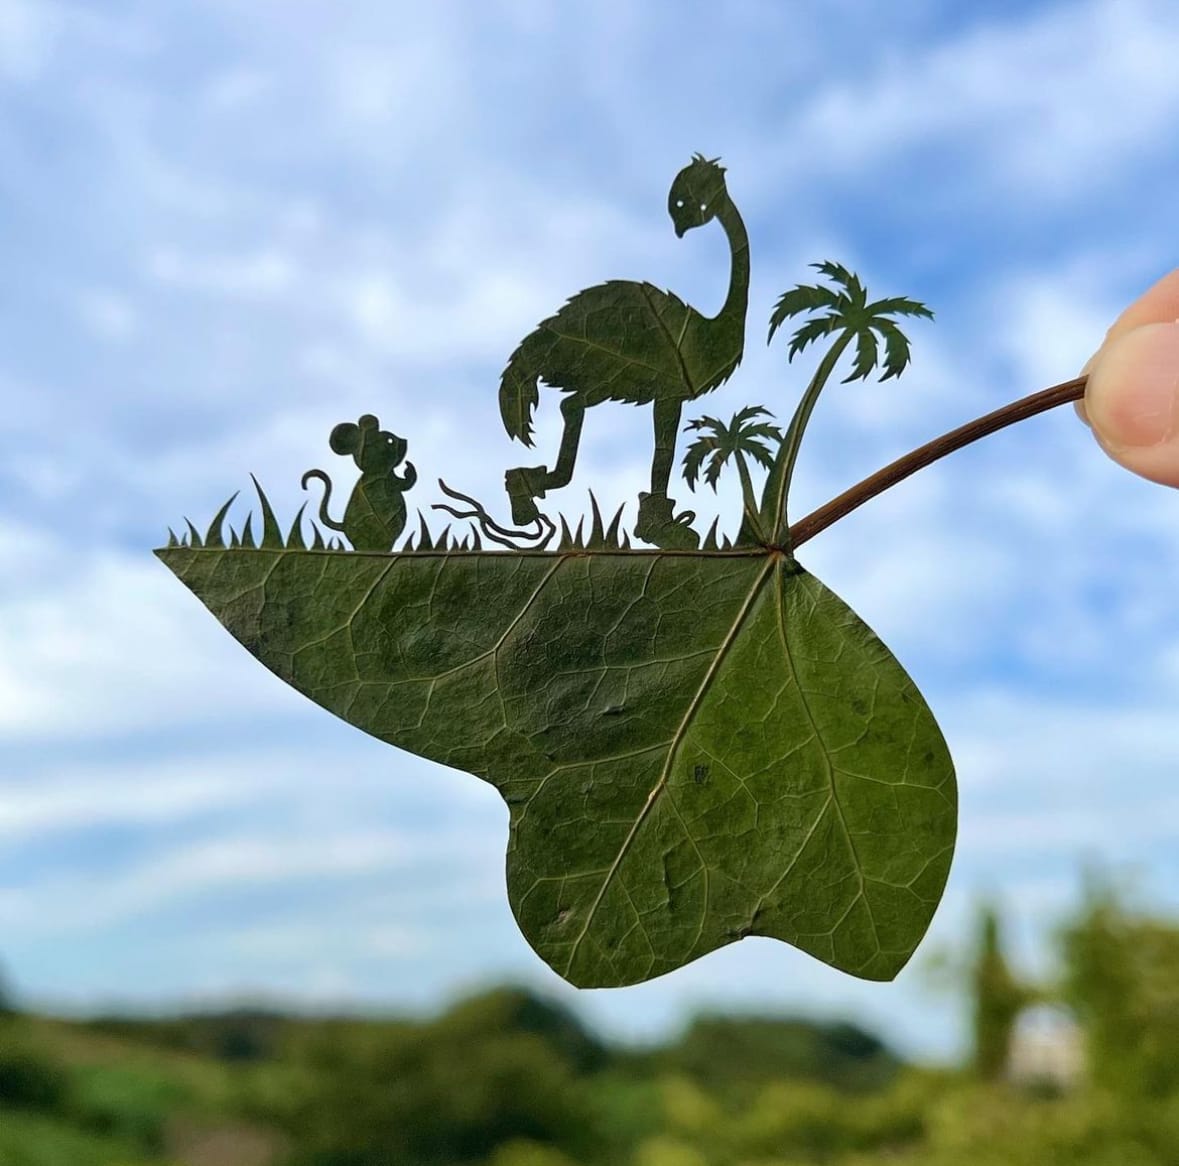 ผลงานศิลปะการตัดแต่งใบไม้สุดเจ๋ง Lito Leaf Art